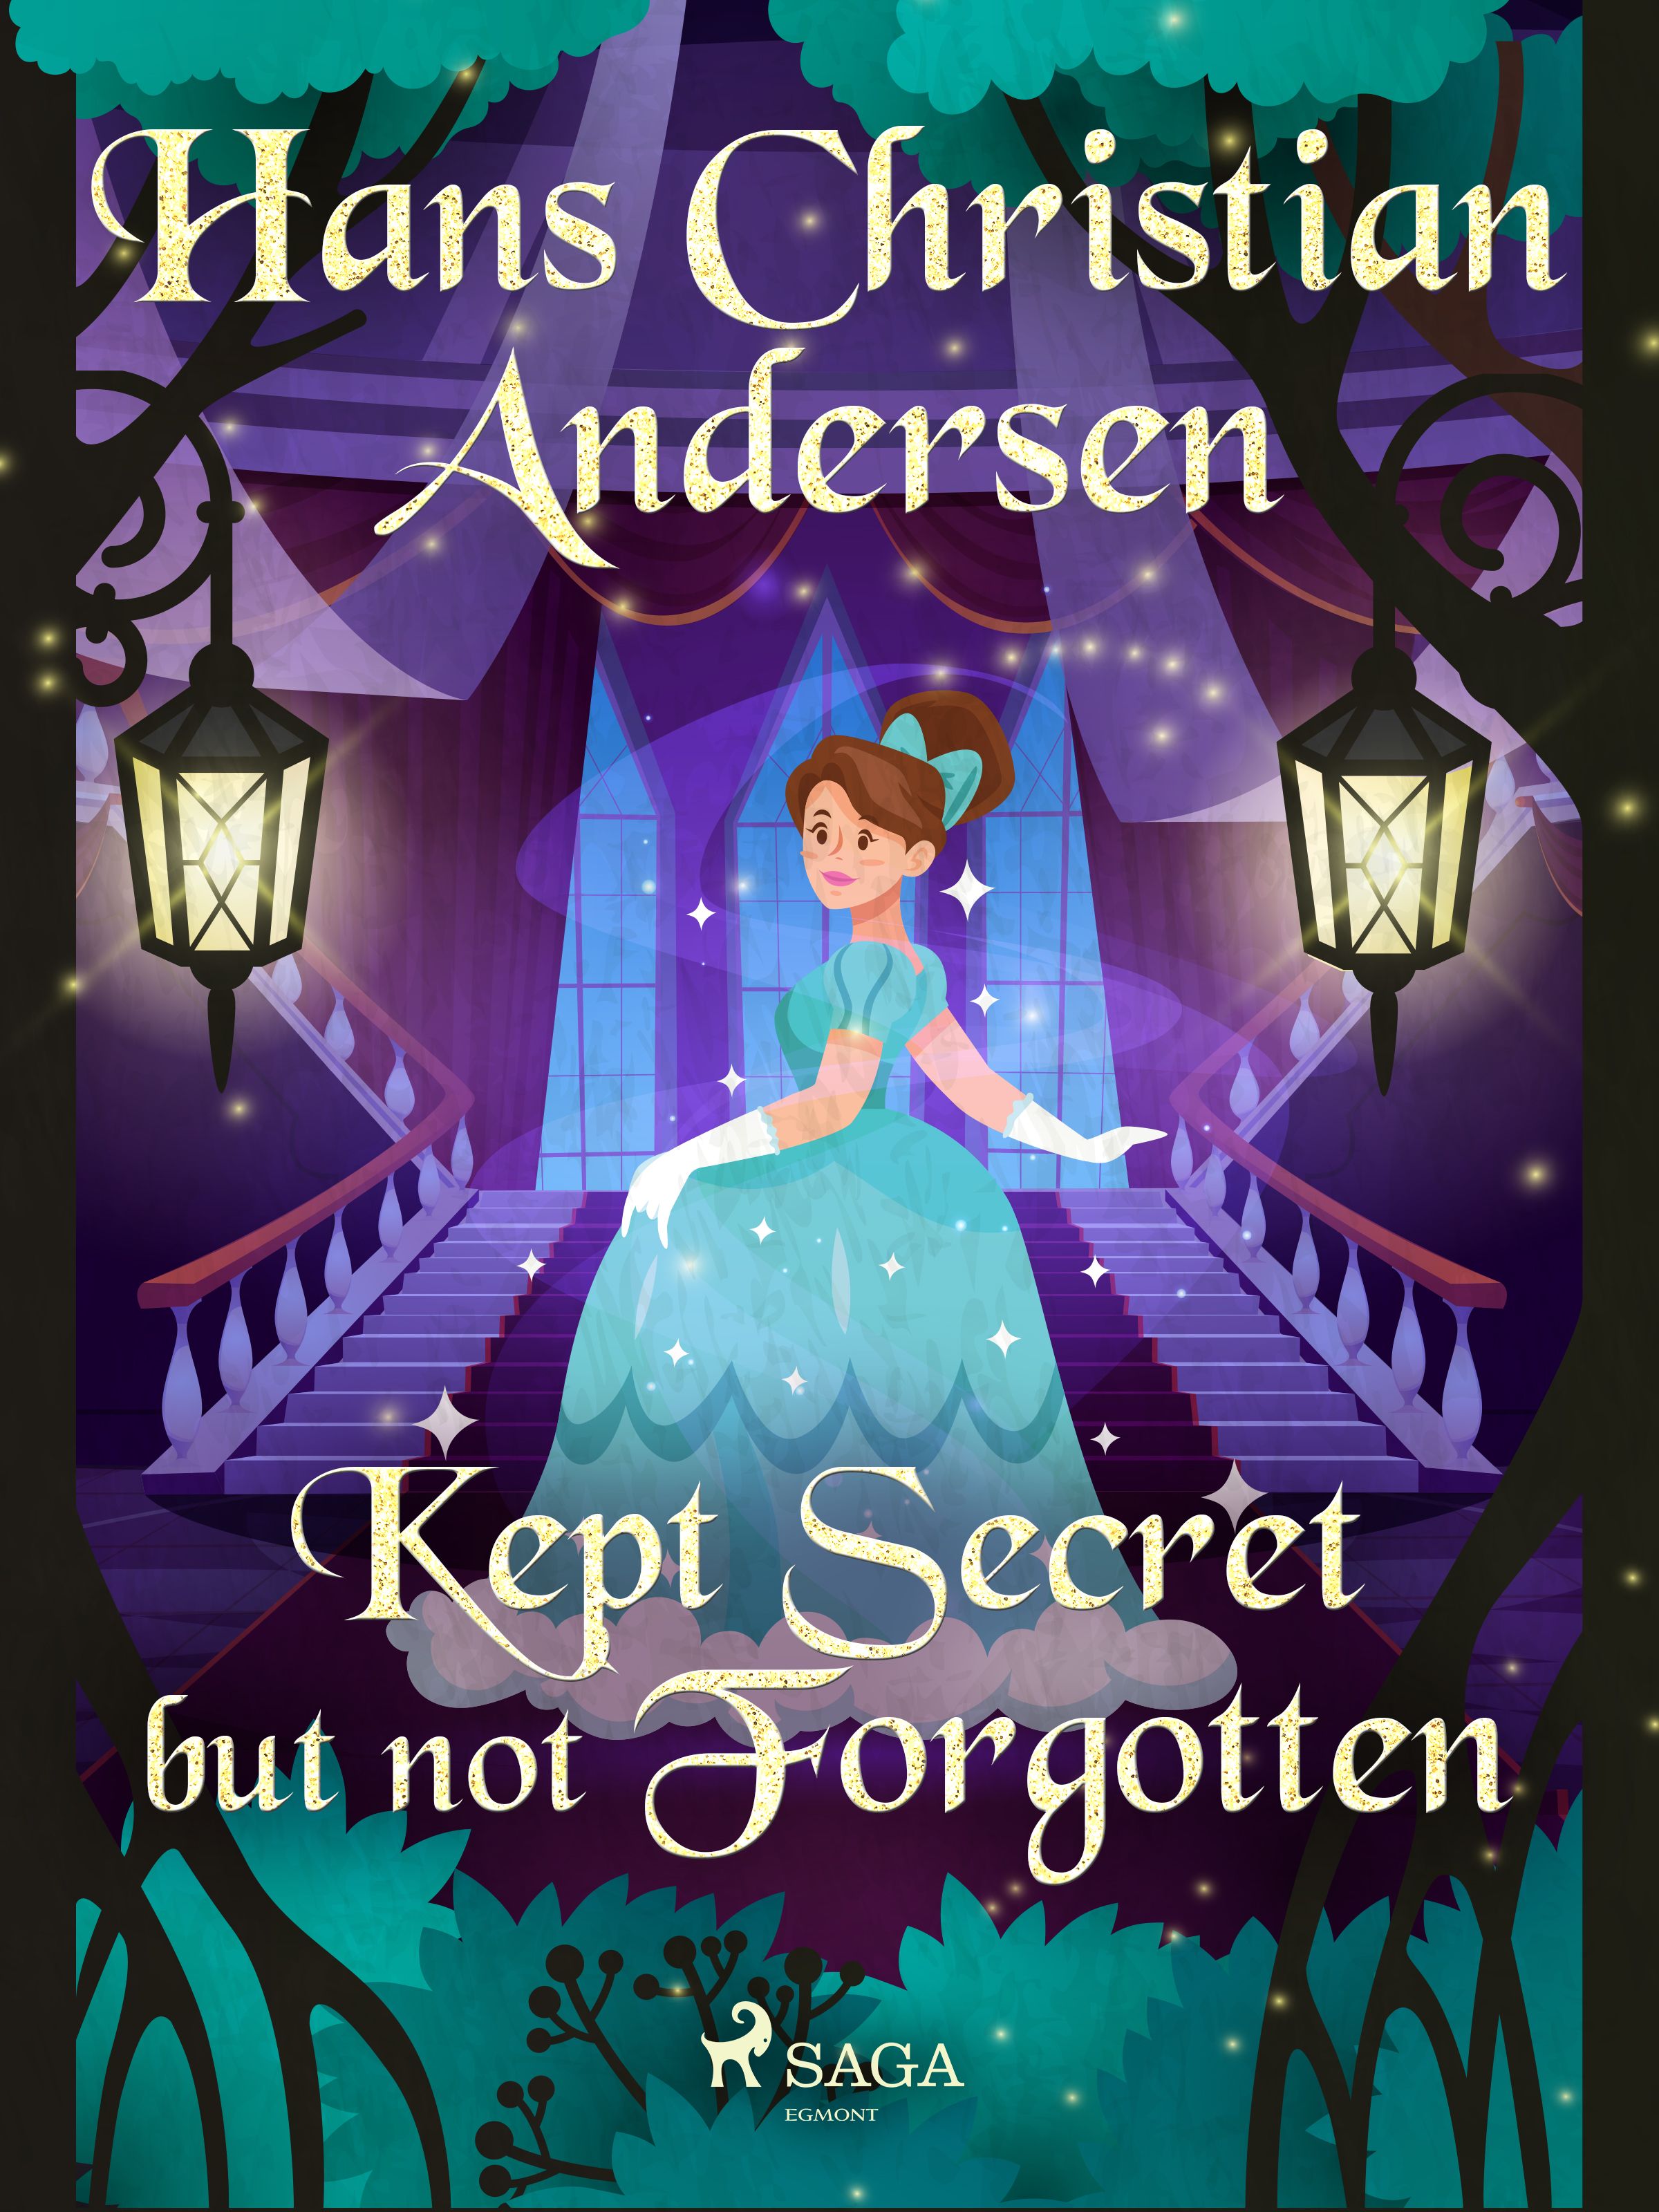 Kept Secret but not Forgotten, e-bog af Hans Christian Andersen